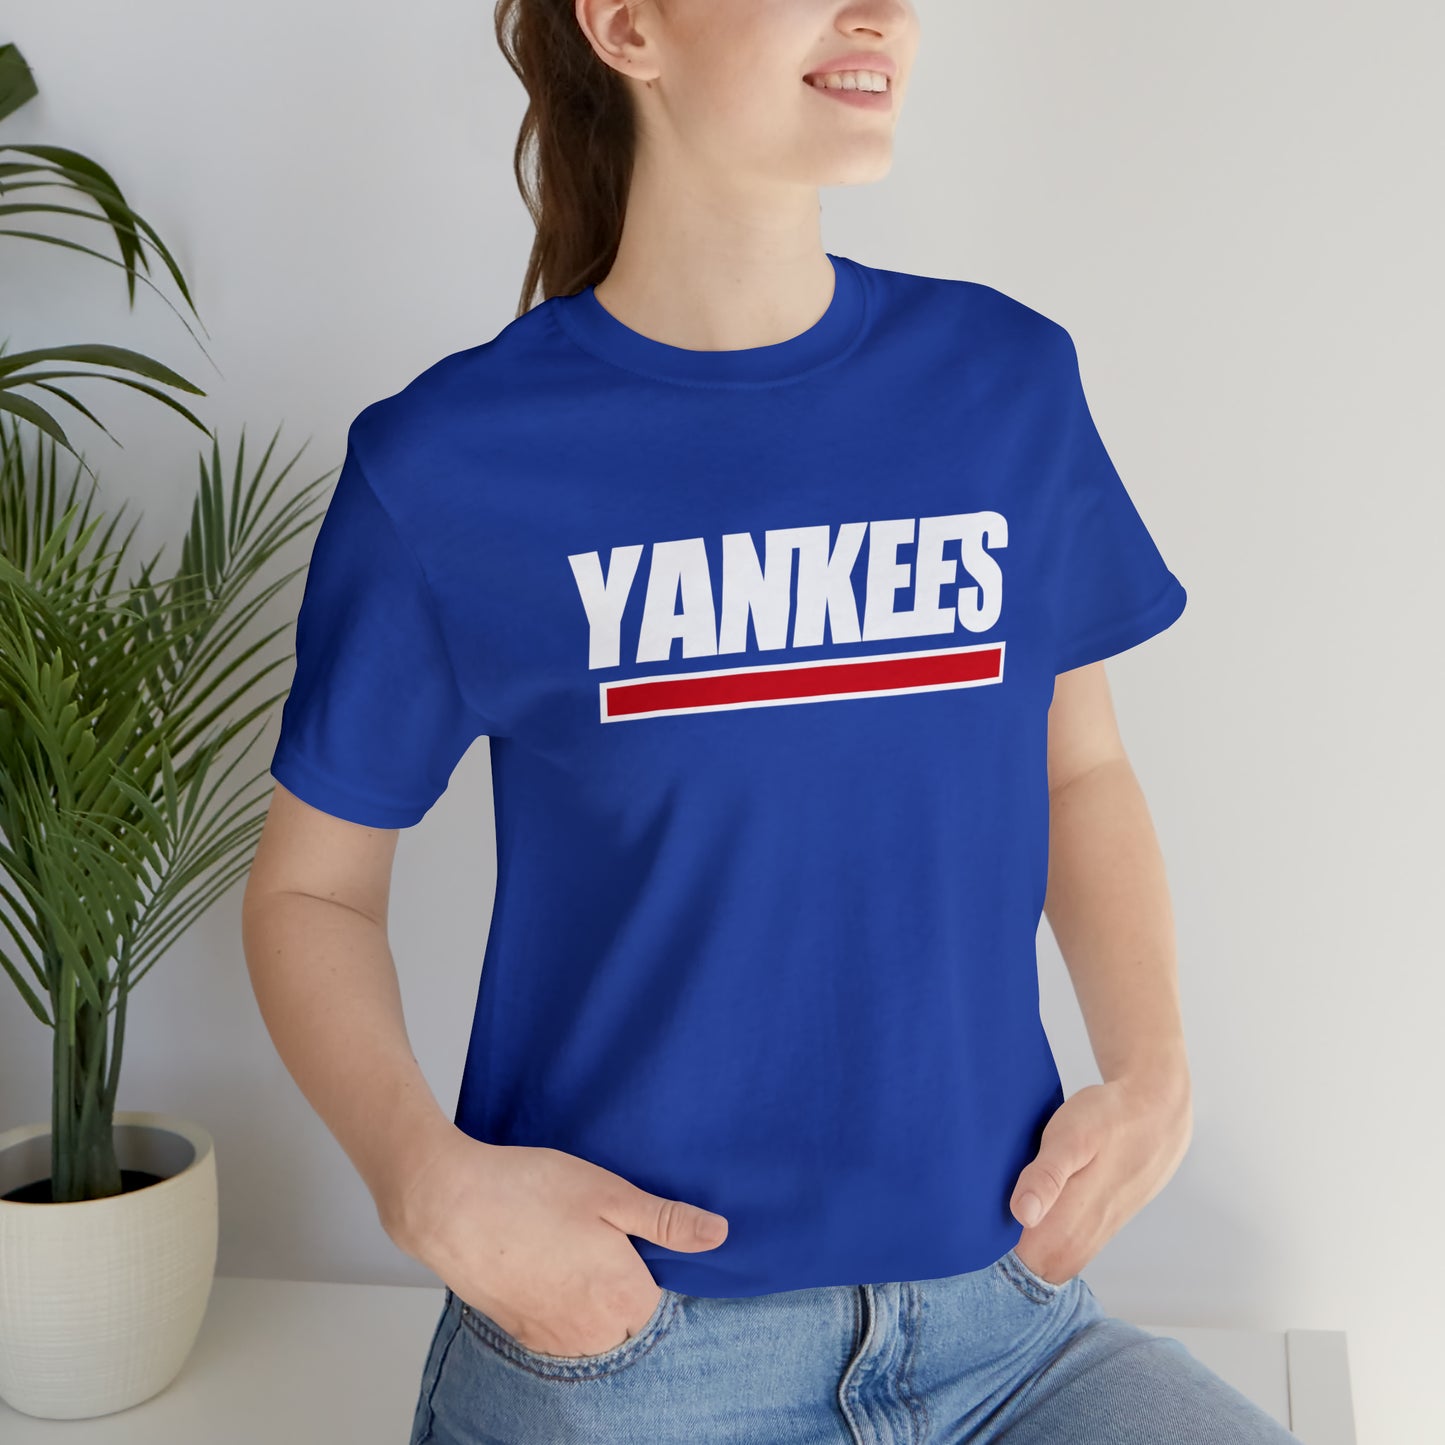 NY Giants & Yankees Mash-Up Tee - NY Sports Powerhouses Unite - thenightmareinc